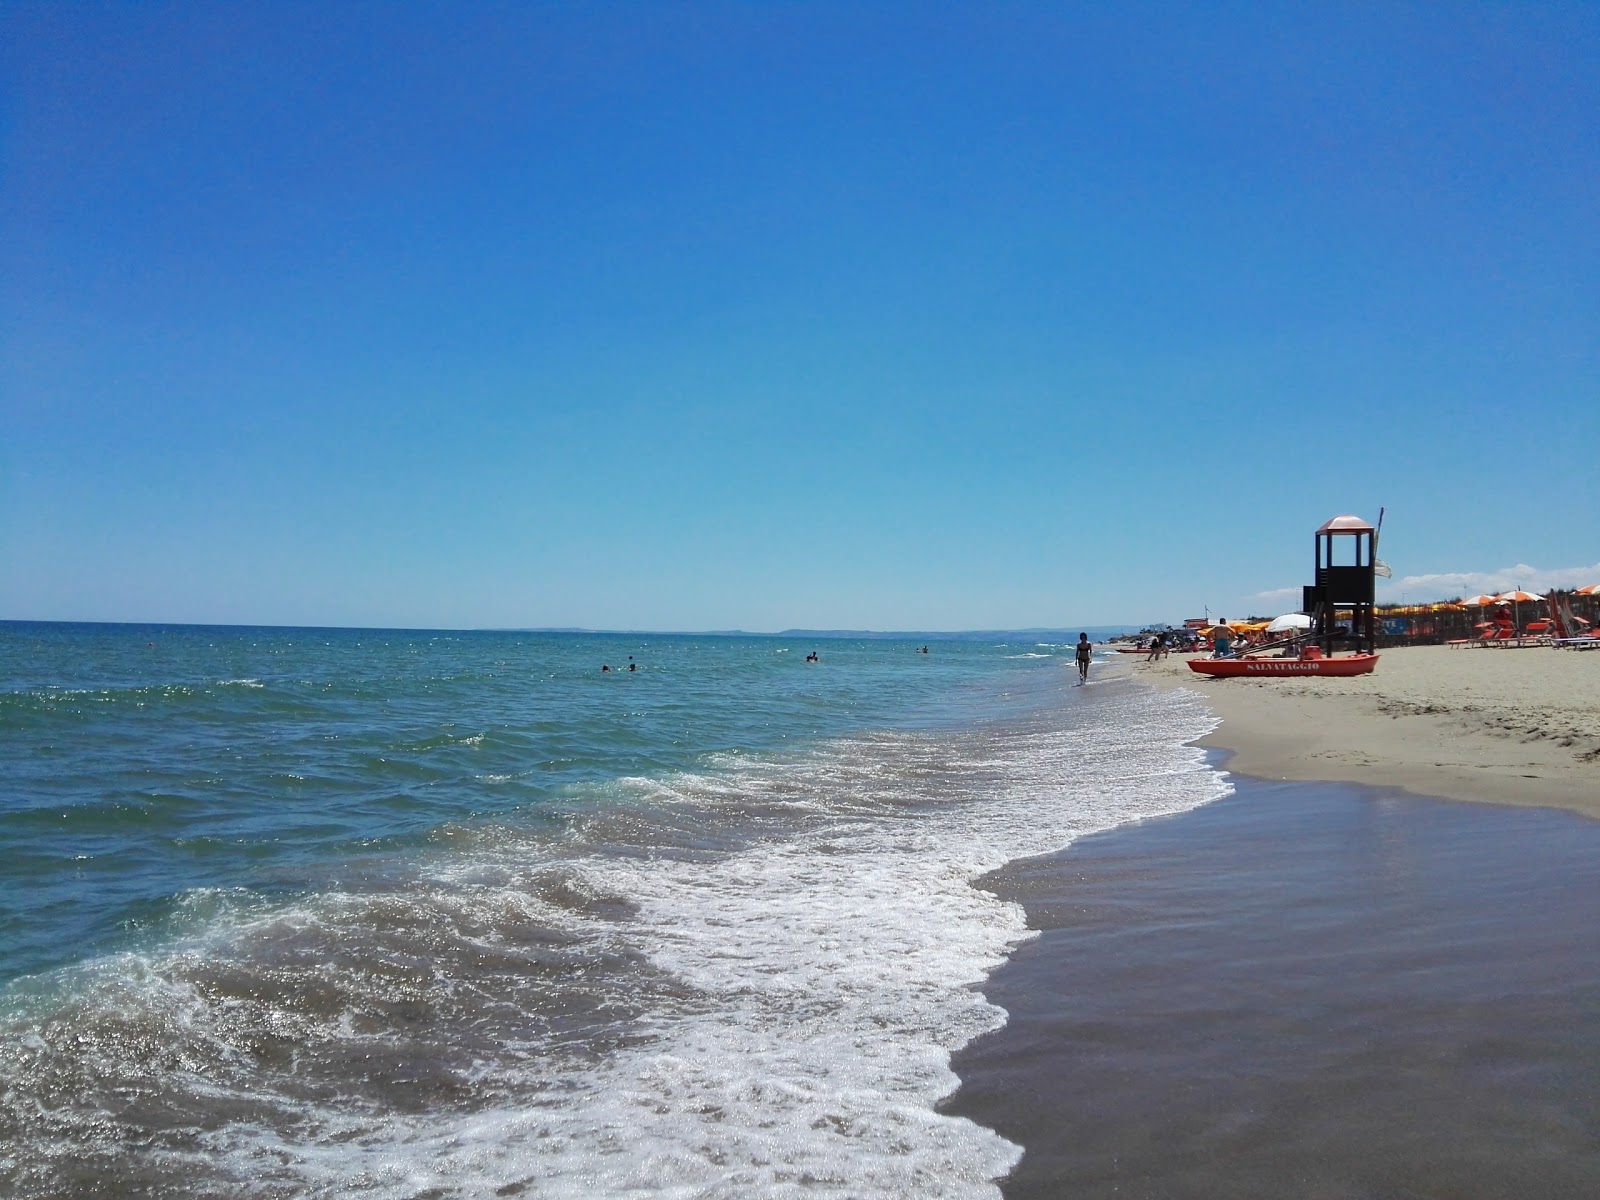 Catania beach II'in fotoğrafı i̇nce kahverengi kum yüzey ile